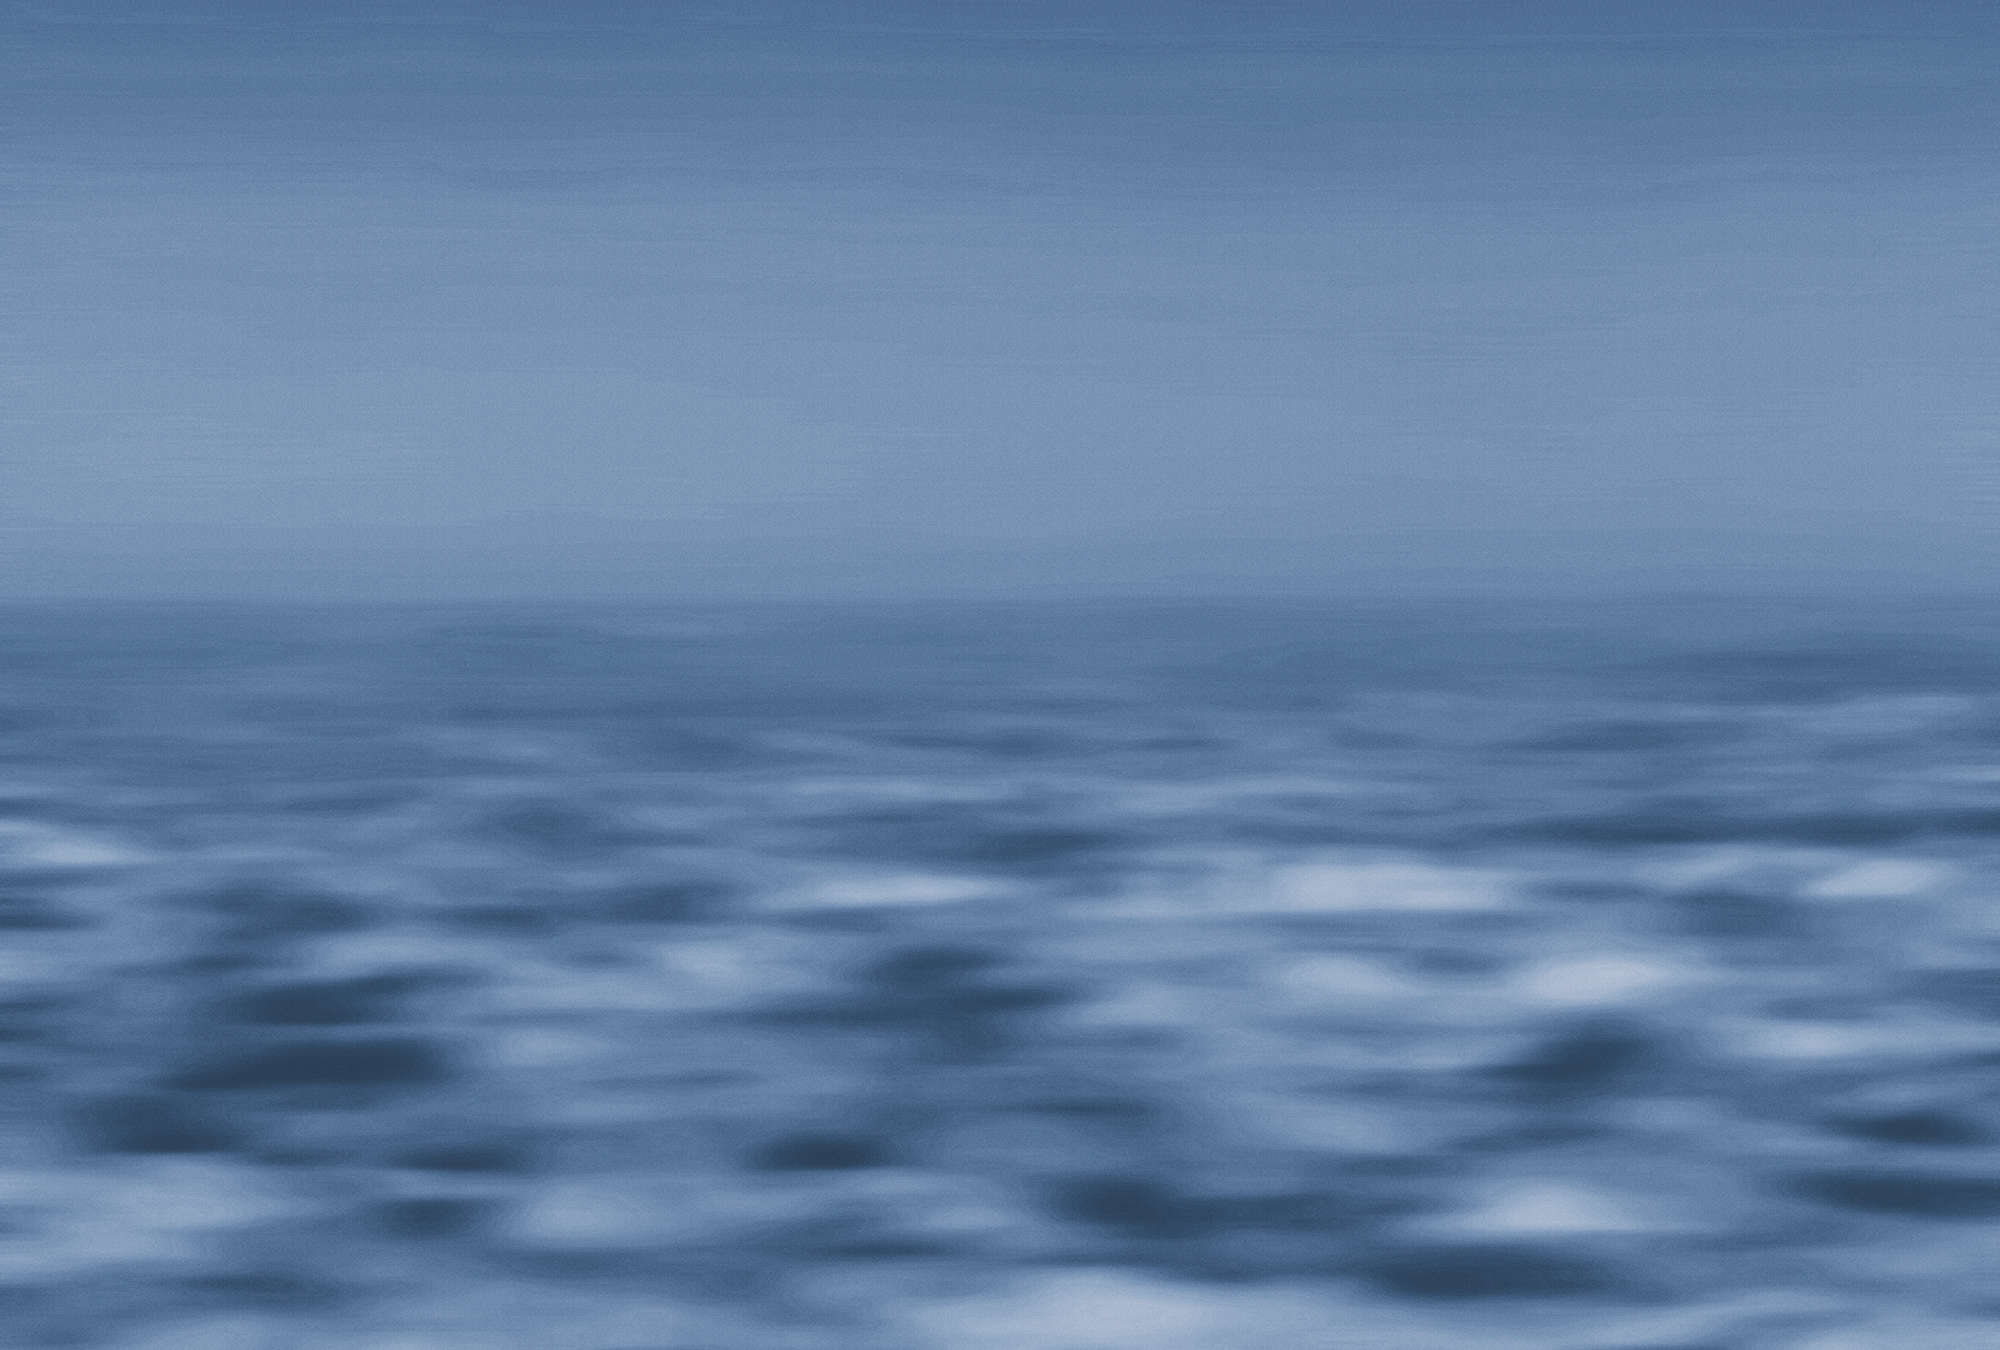             Maritime Fototapete Meer, abstrakte Wasserwelt – Blau, Weiß
        